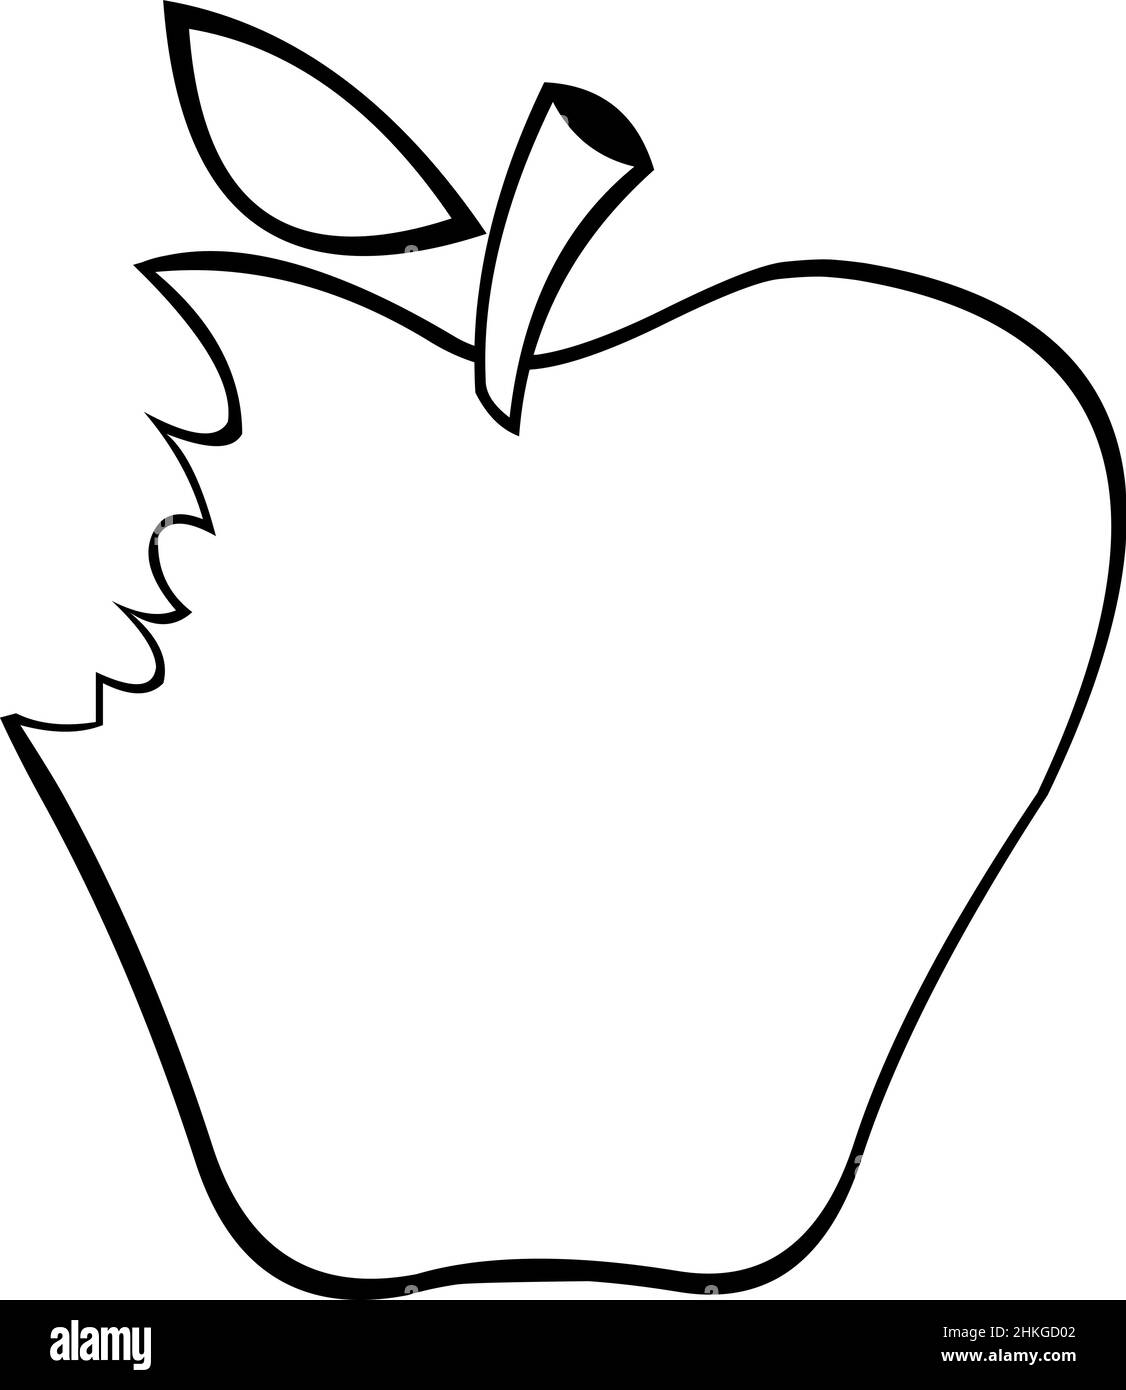 Illustration vectorielle d'une pomme bitten dessinée en noir et blanc Illustration de Vecteur